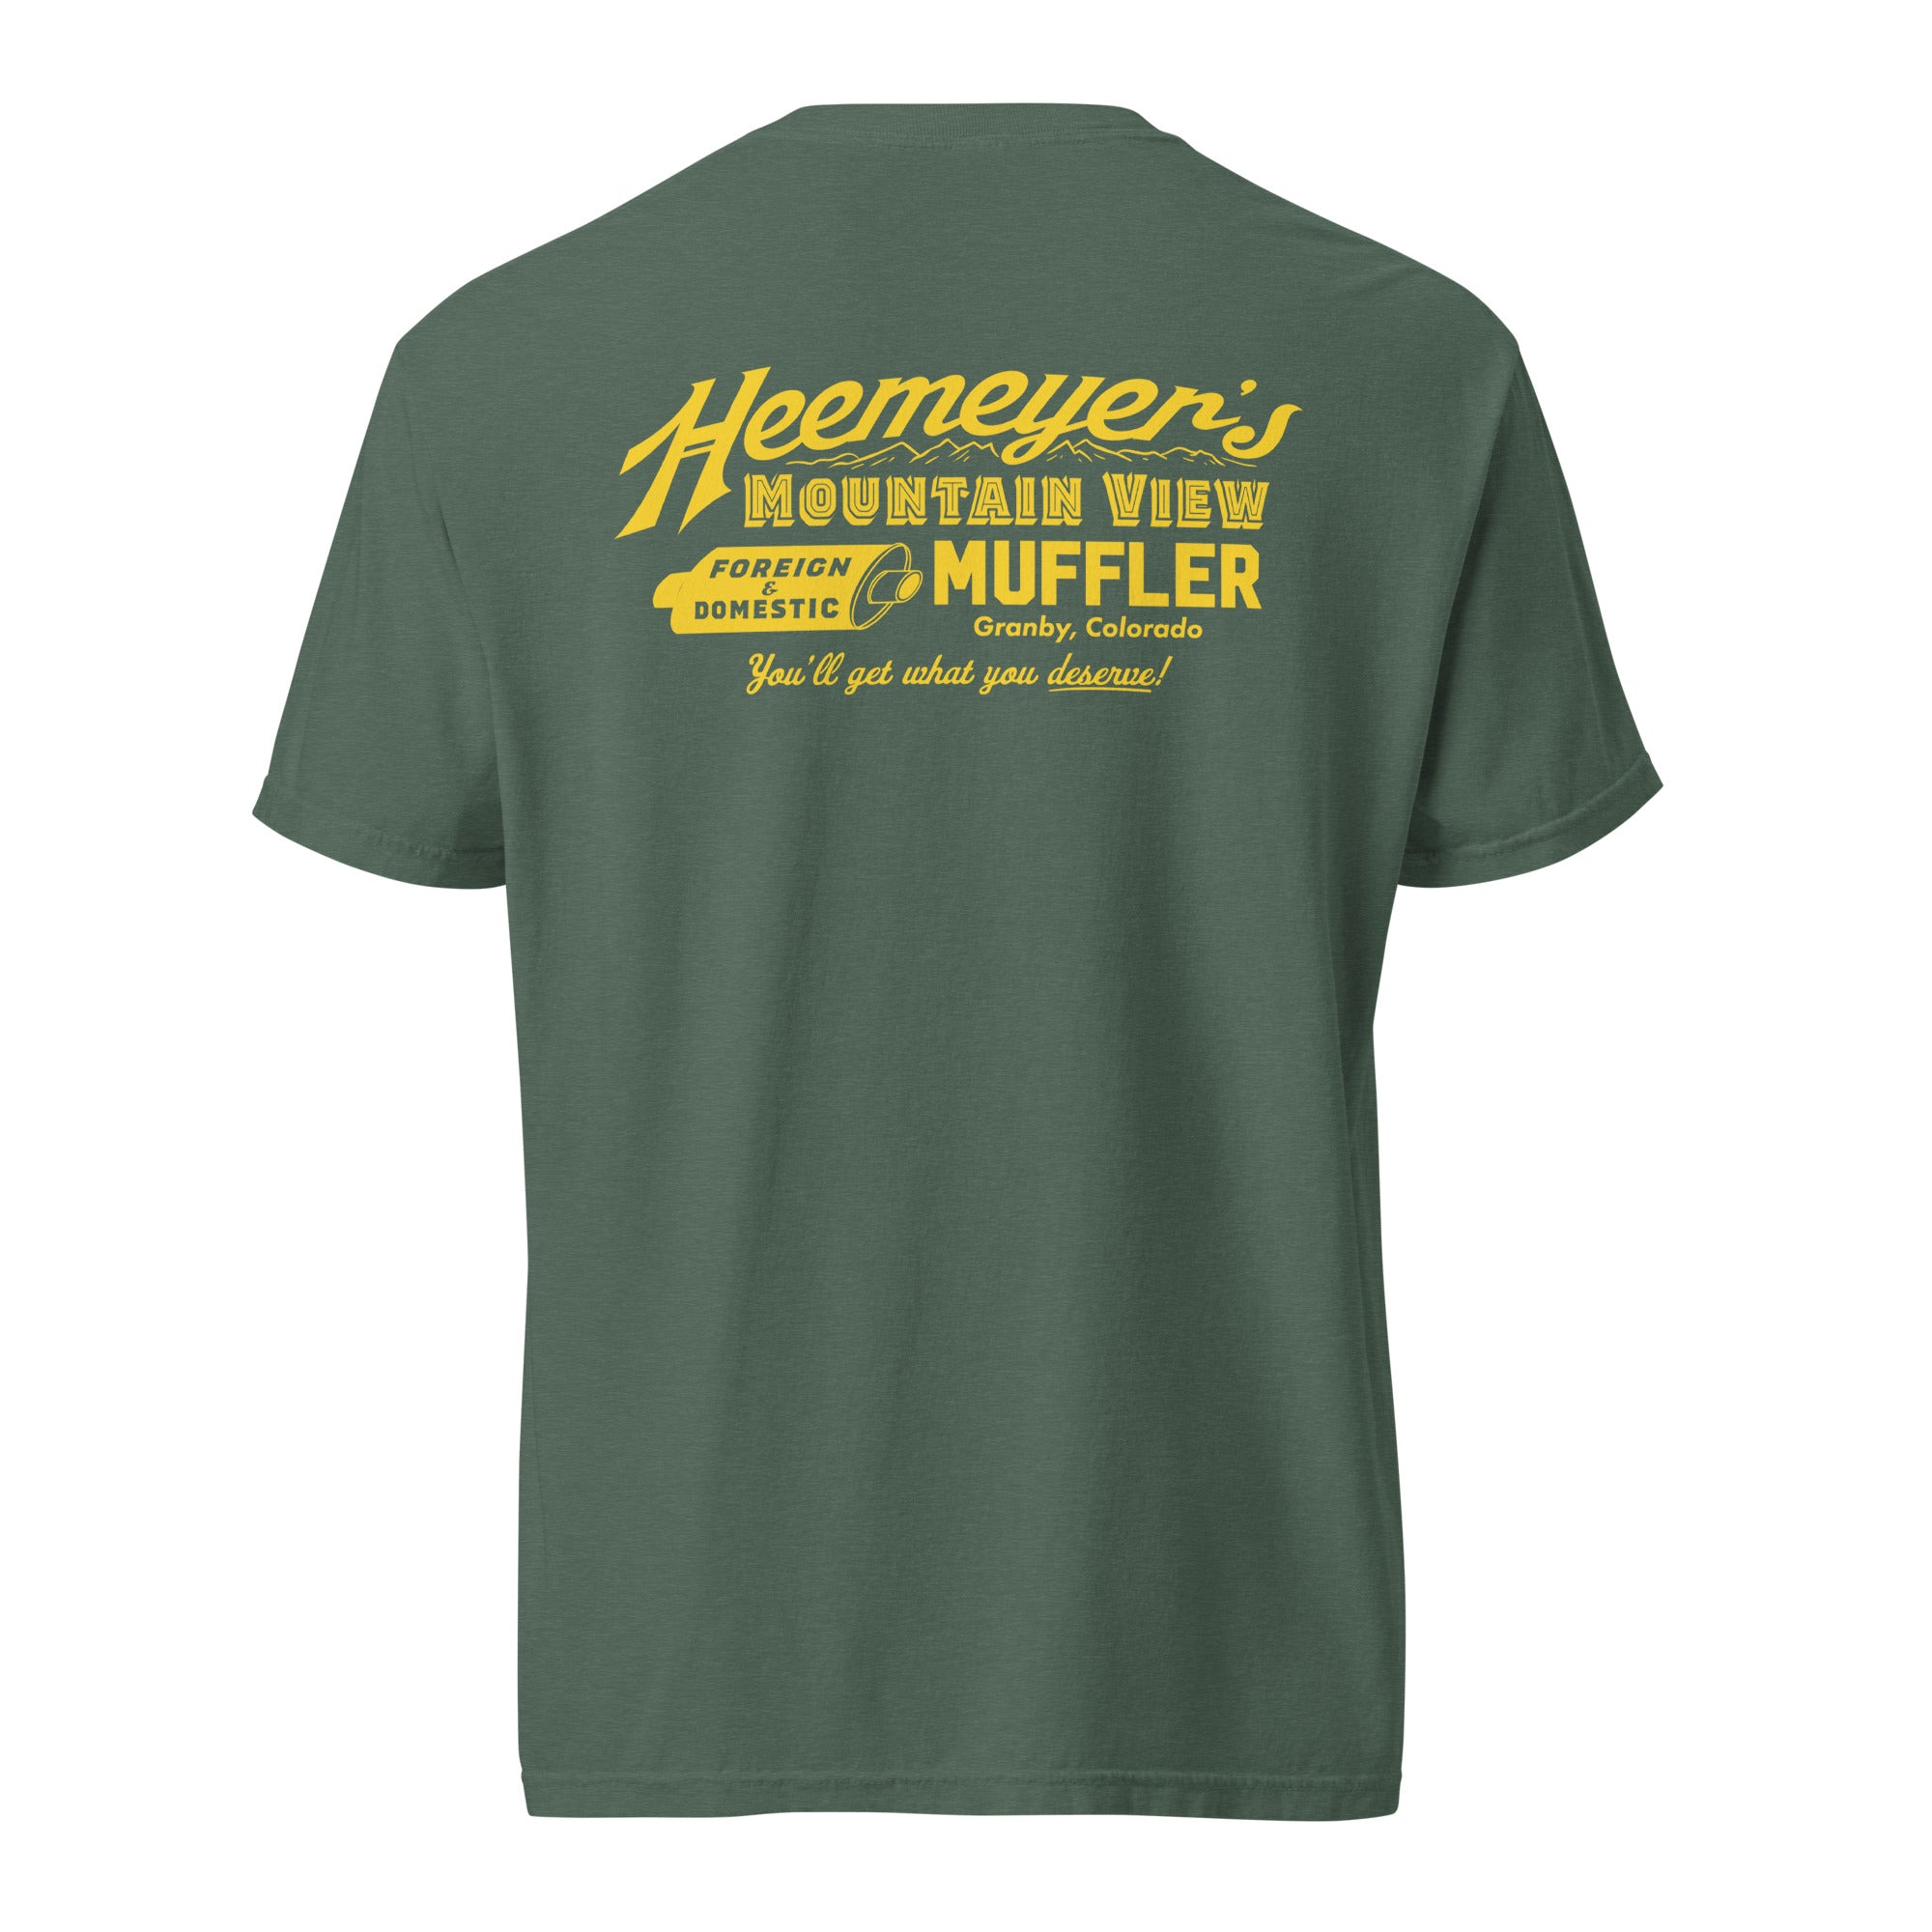 Heemeyer's Mountain View Muffler Heavyweight T-shirt